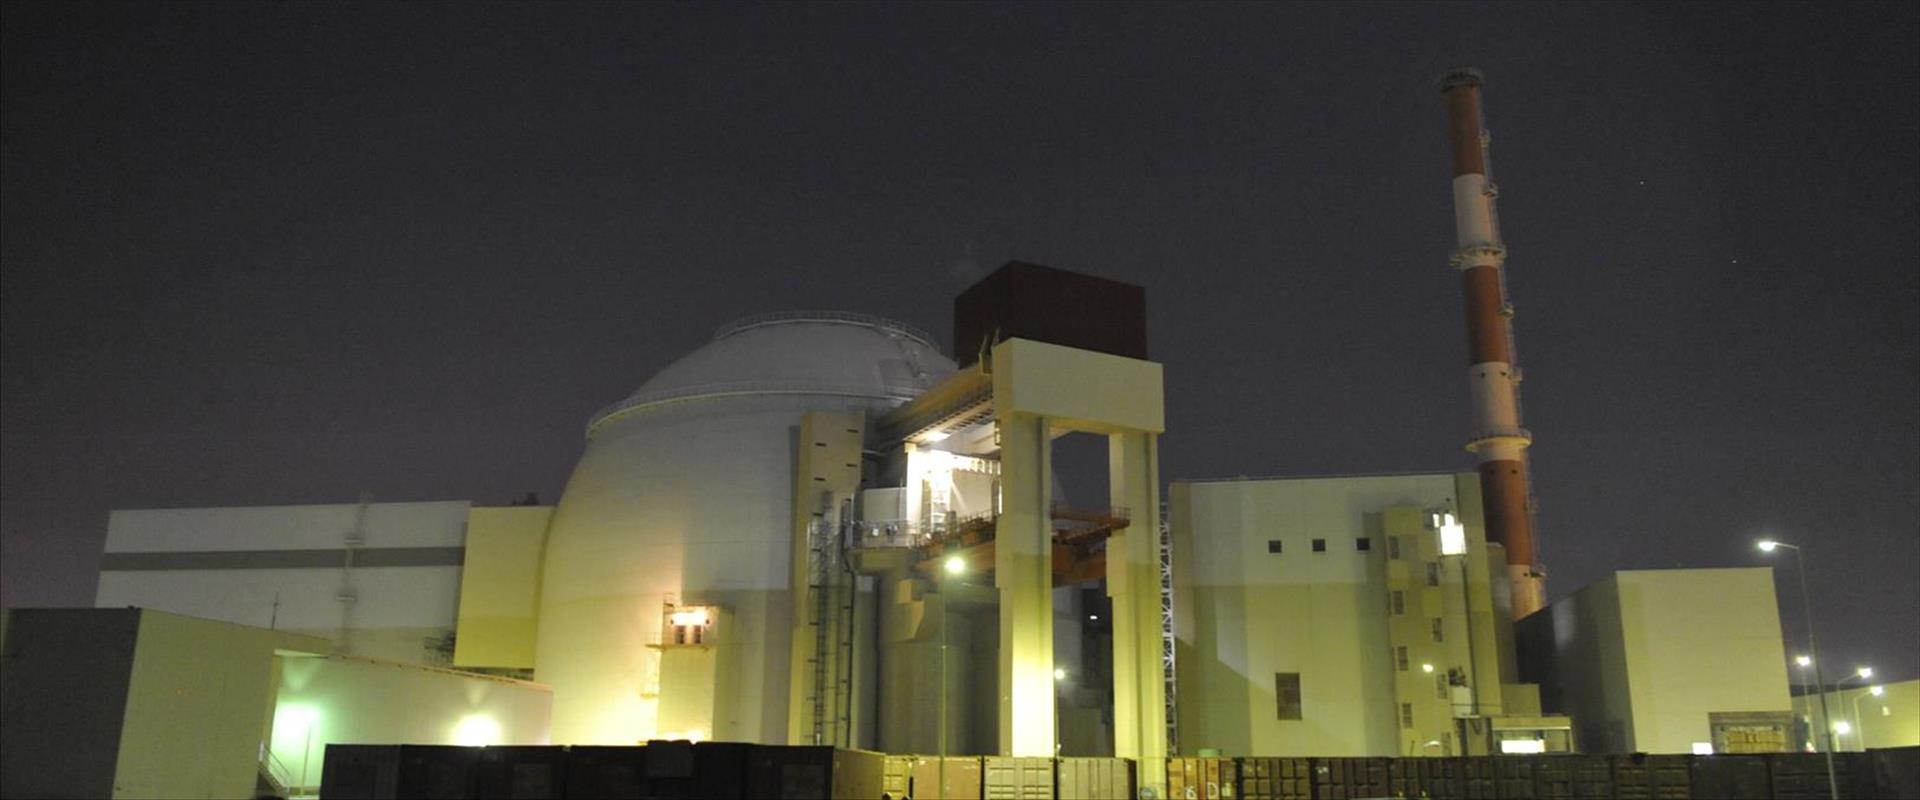 תחנת הכוח הגרעינית בבושהר שבאיראן